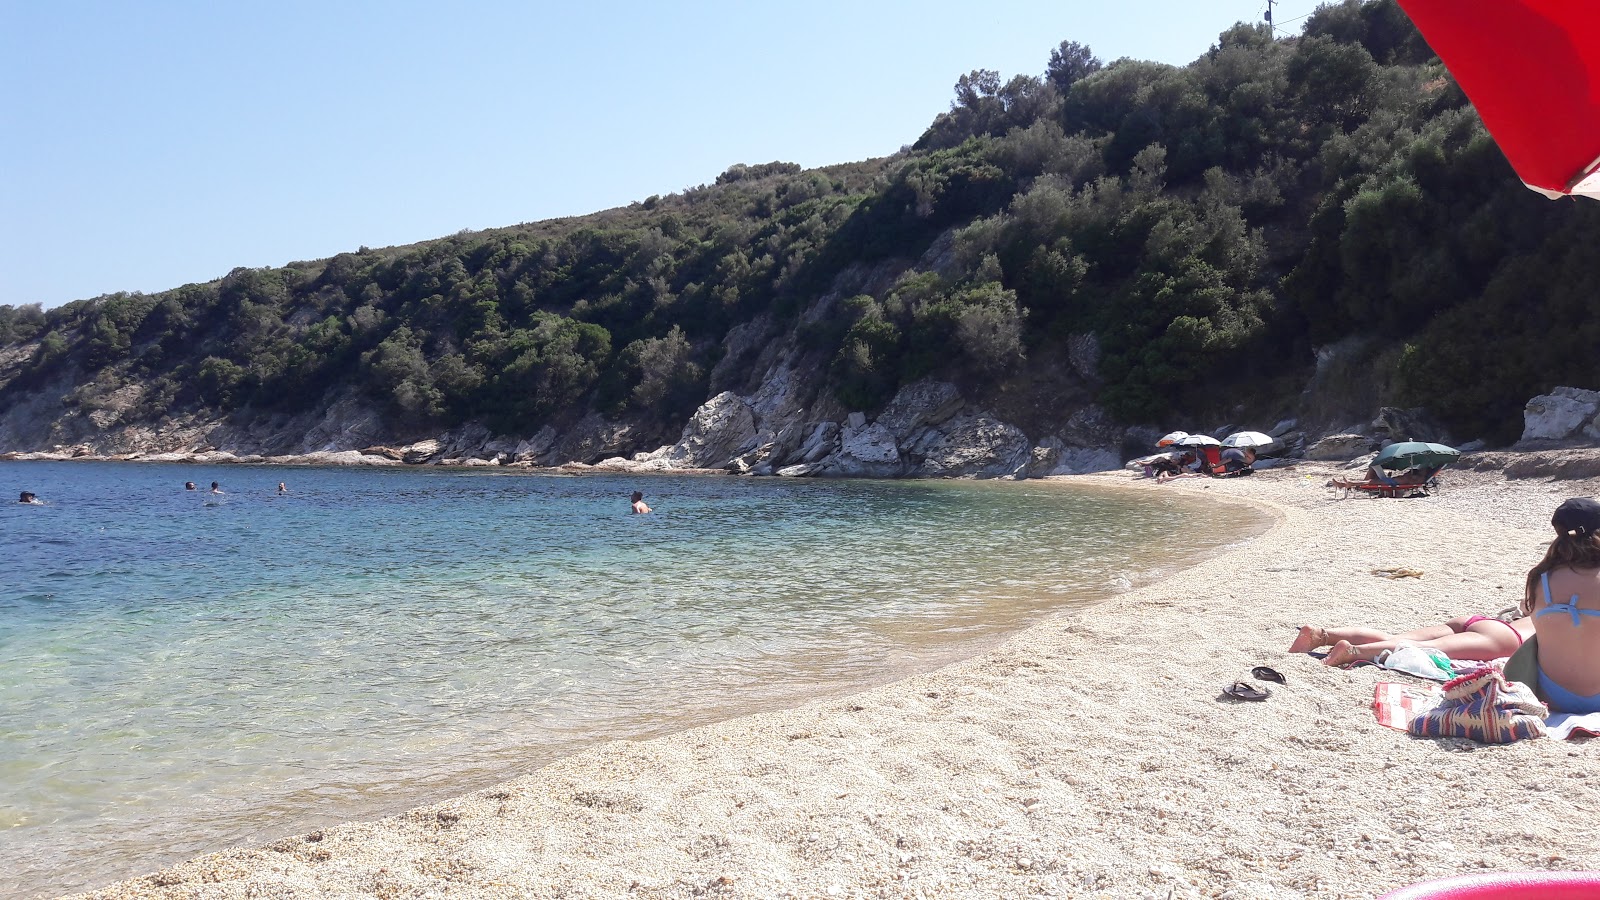 Gardo beach'in fotoğrafı parlak kabuk kumu yüzey ile